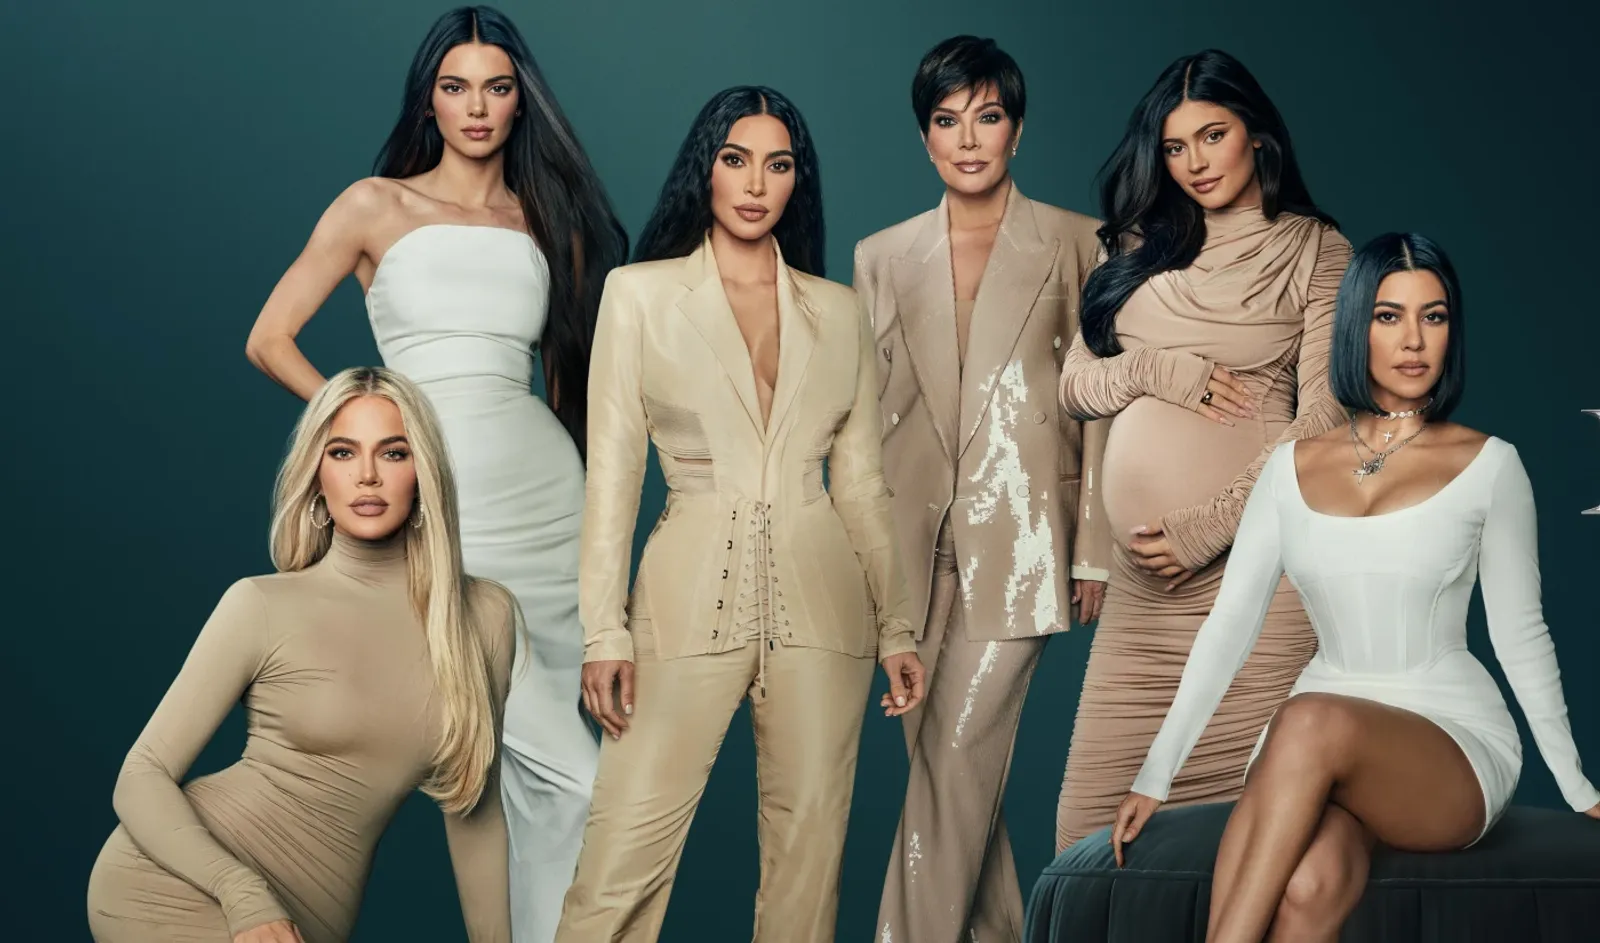 Apakah Acara "The Kardashians" Betulan Realita? Ini Jawabannya!